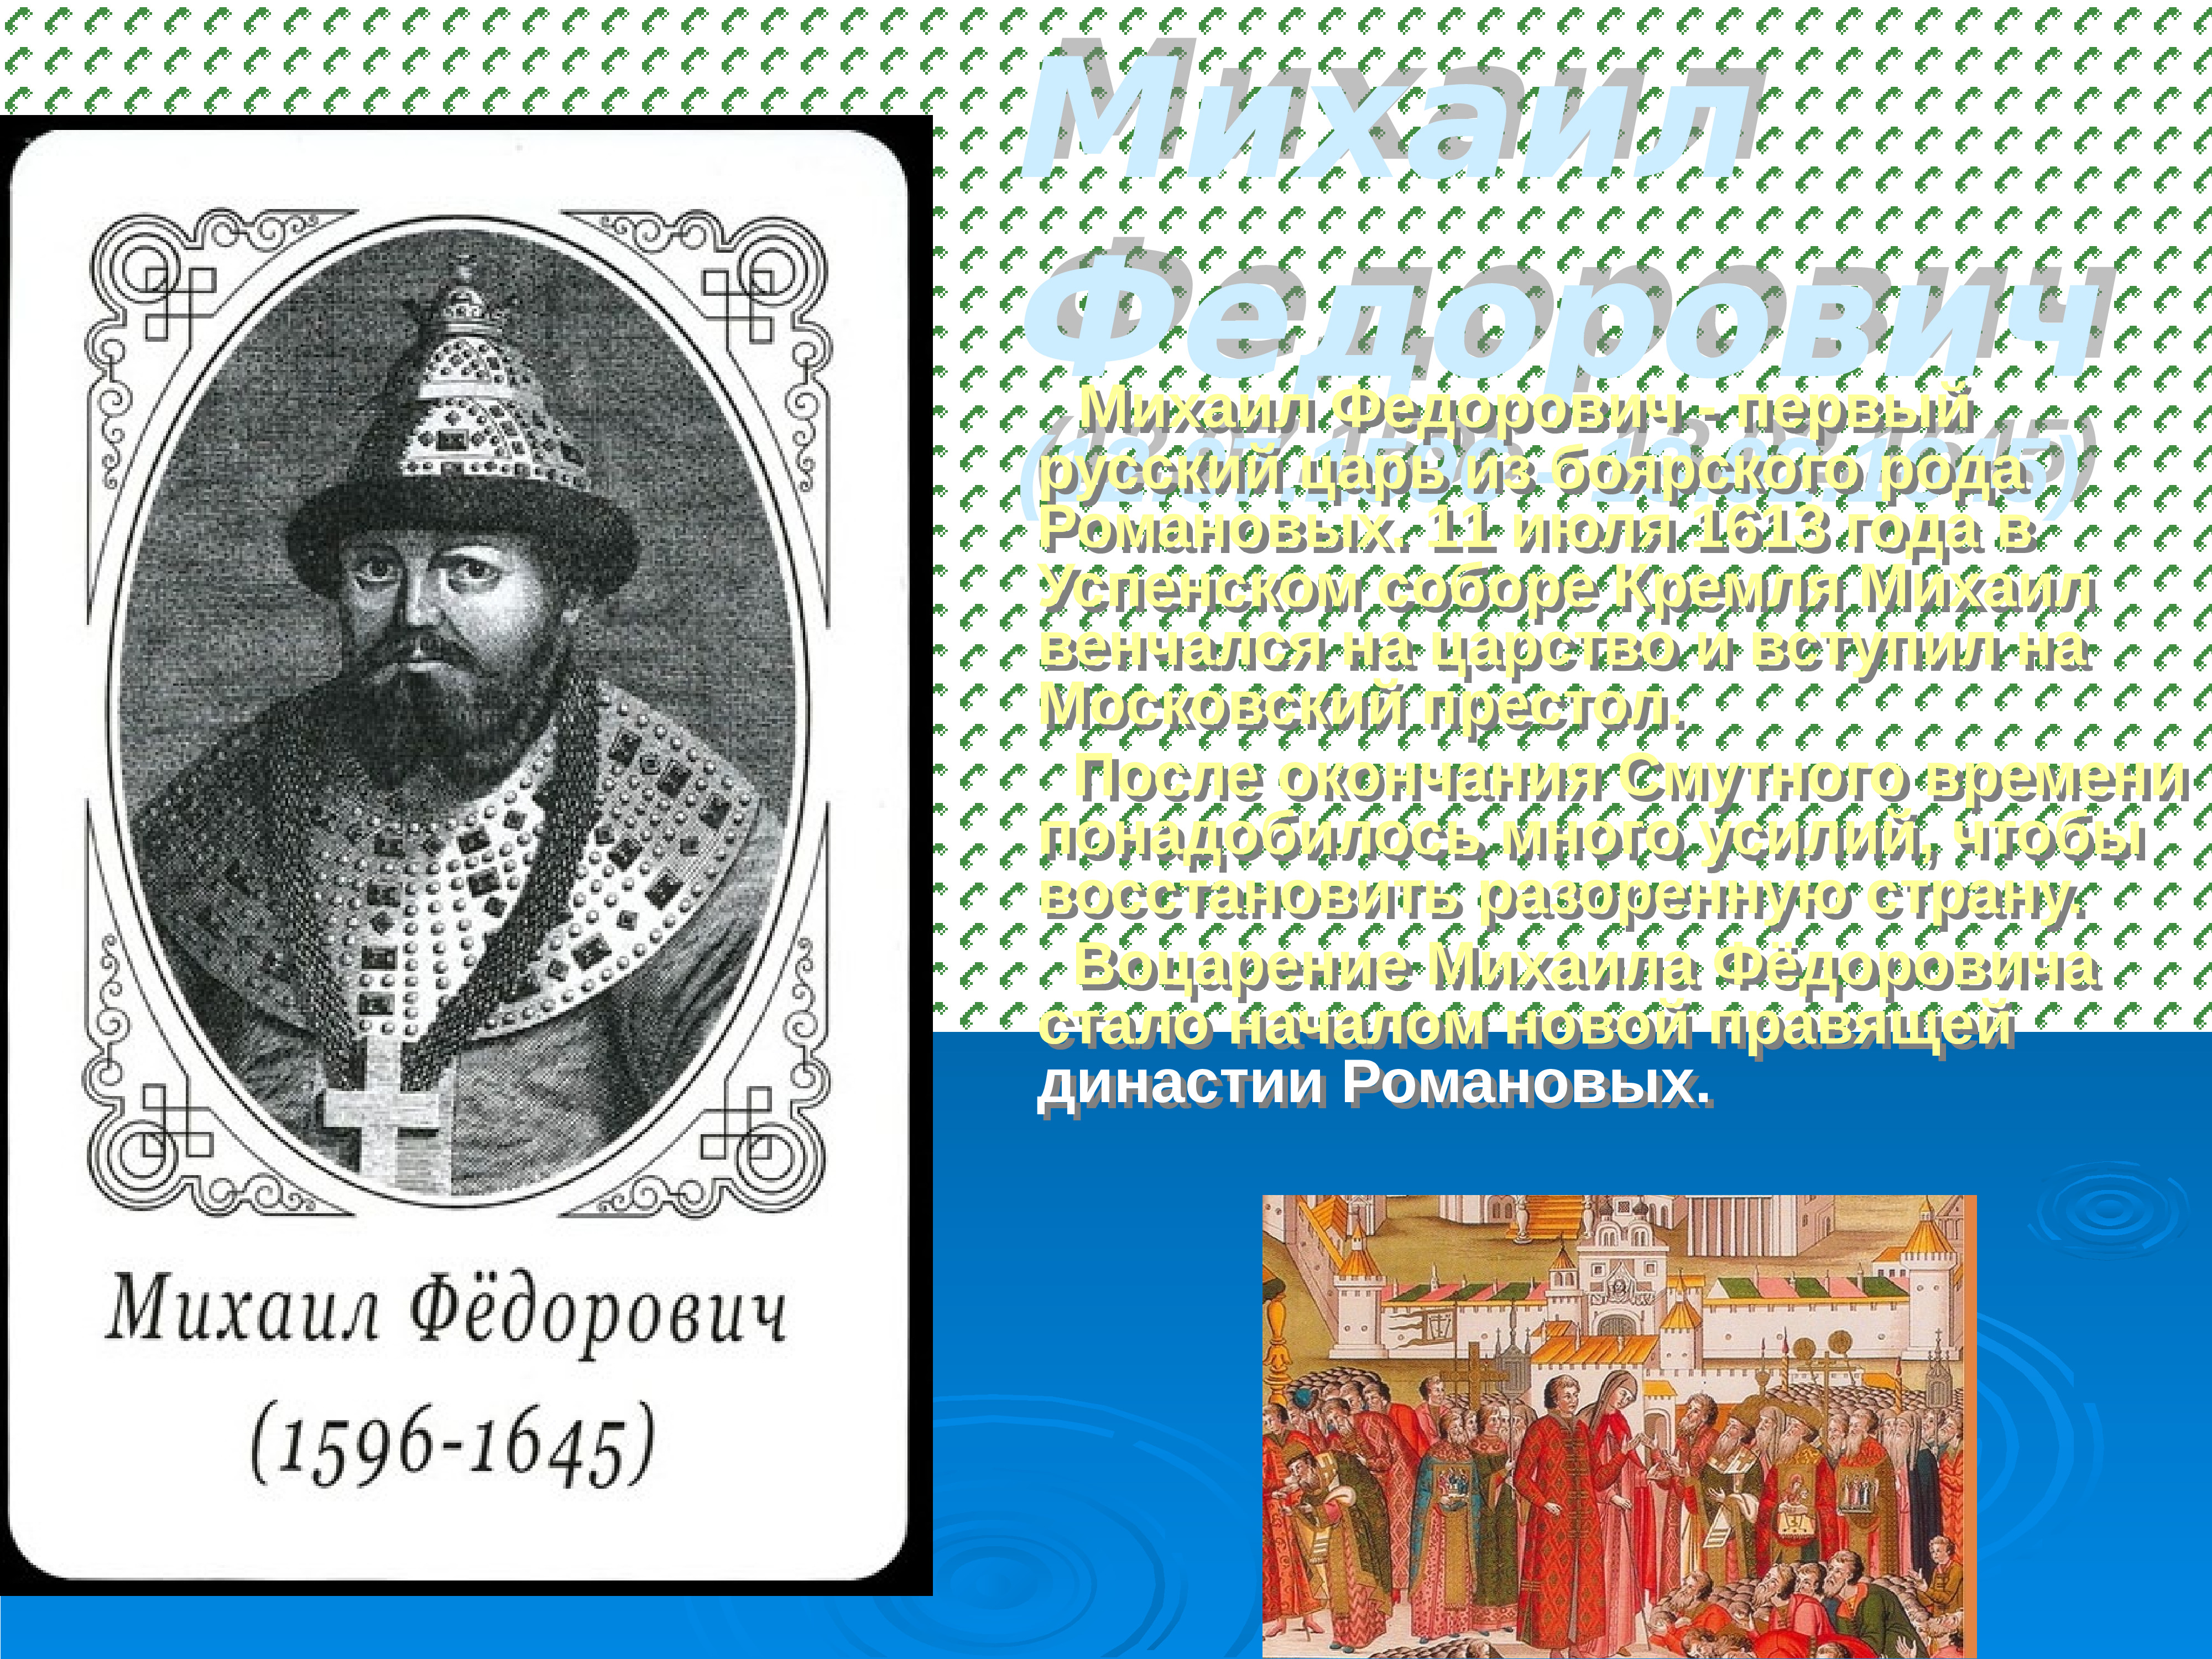 2 царь из династии романовых. Михаила Федоровича Романова (1613-1645 г.г.).